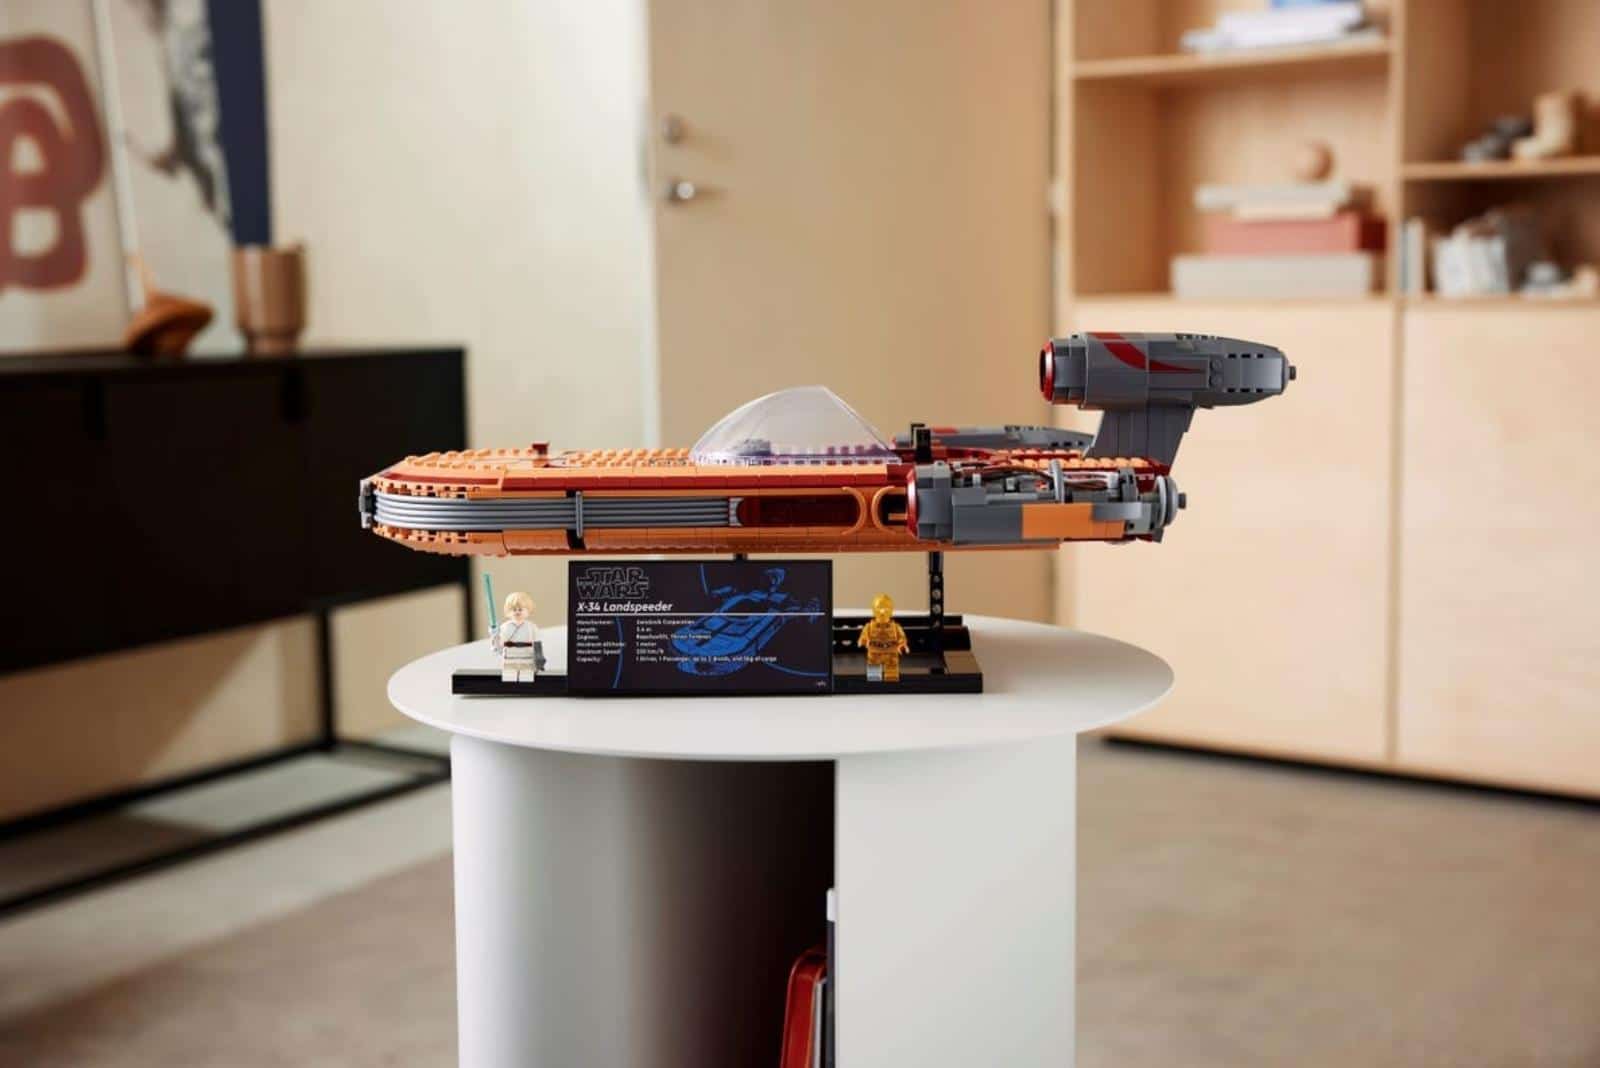 A new LEGO set for Star Wars fans.  This is Skywalker's unique Landspeeder